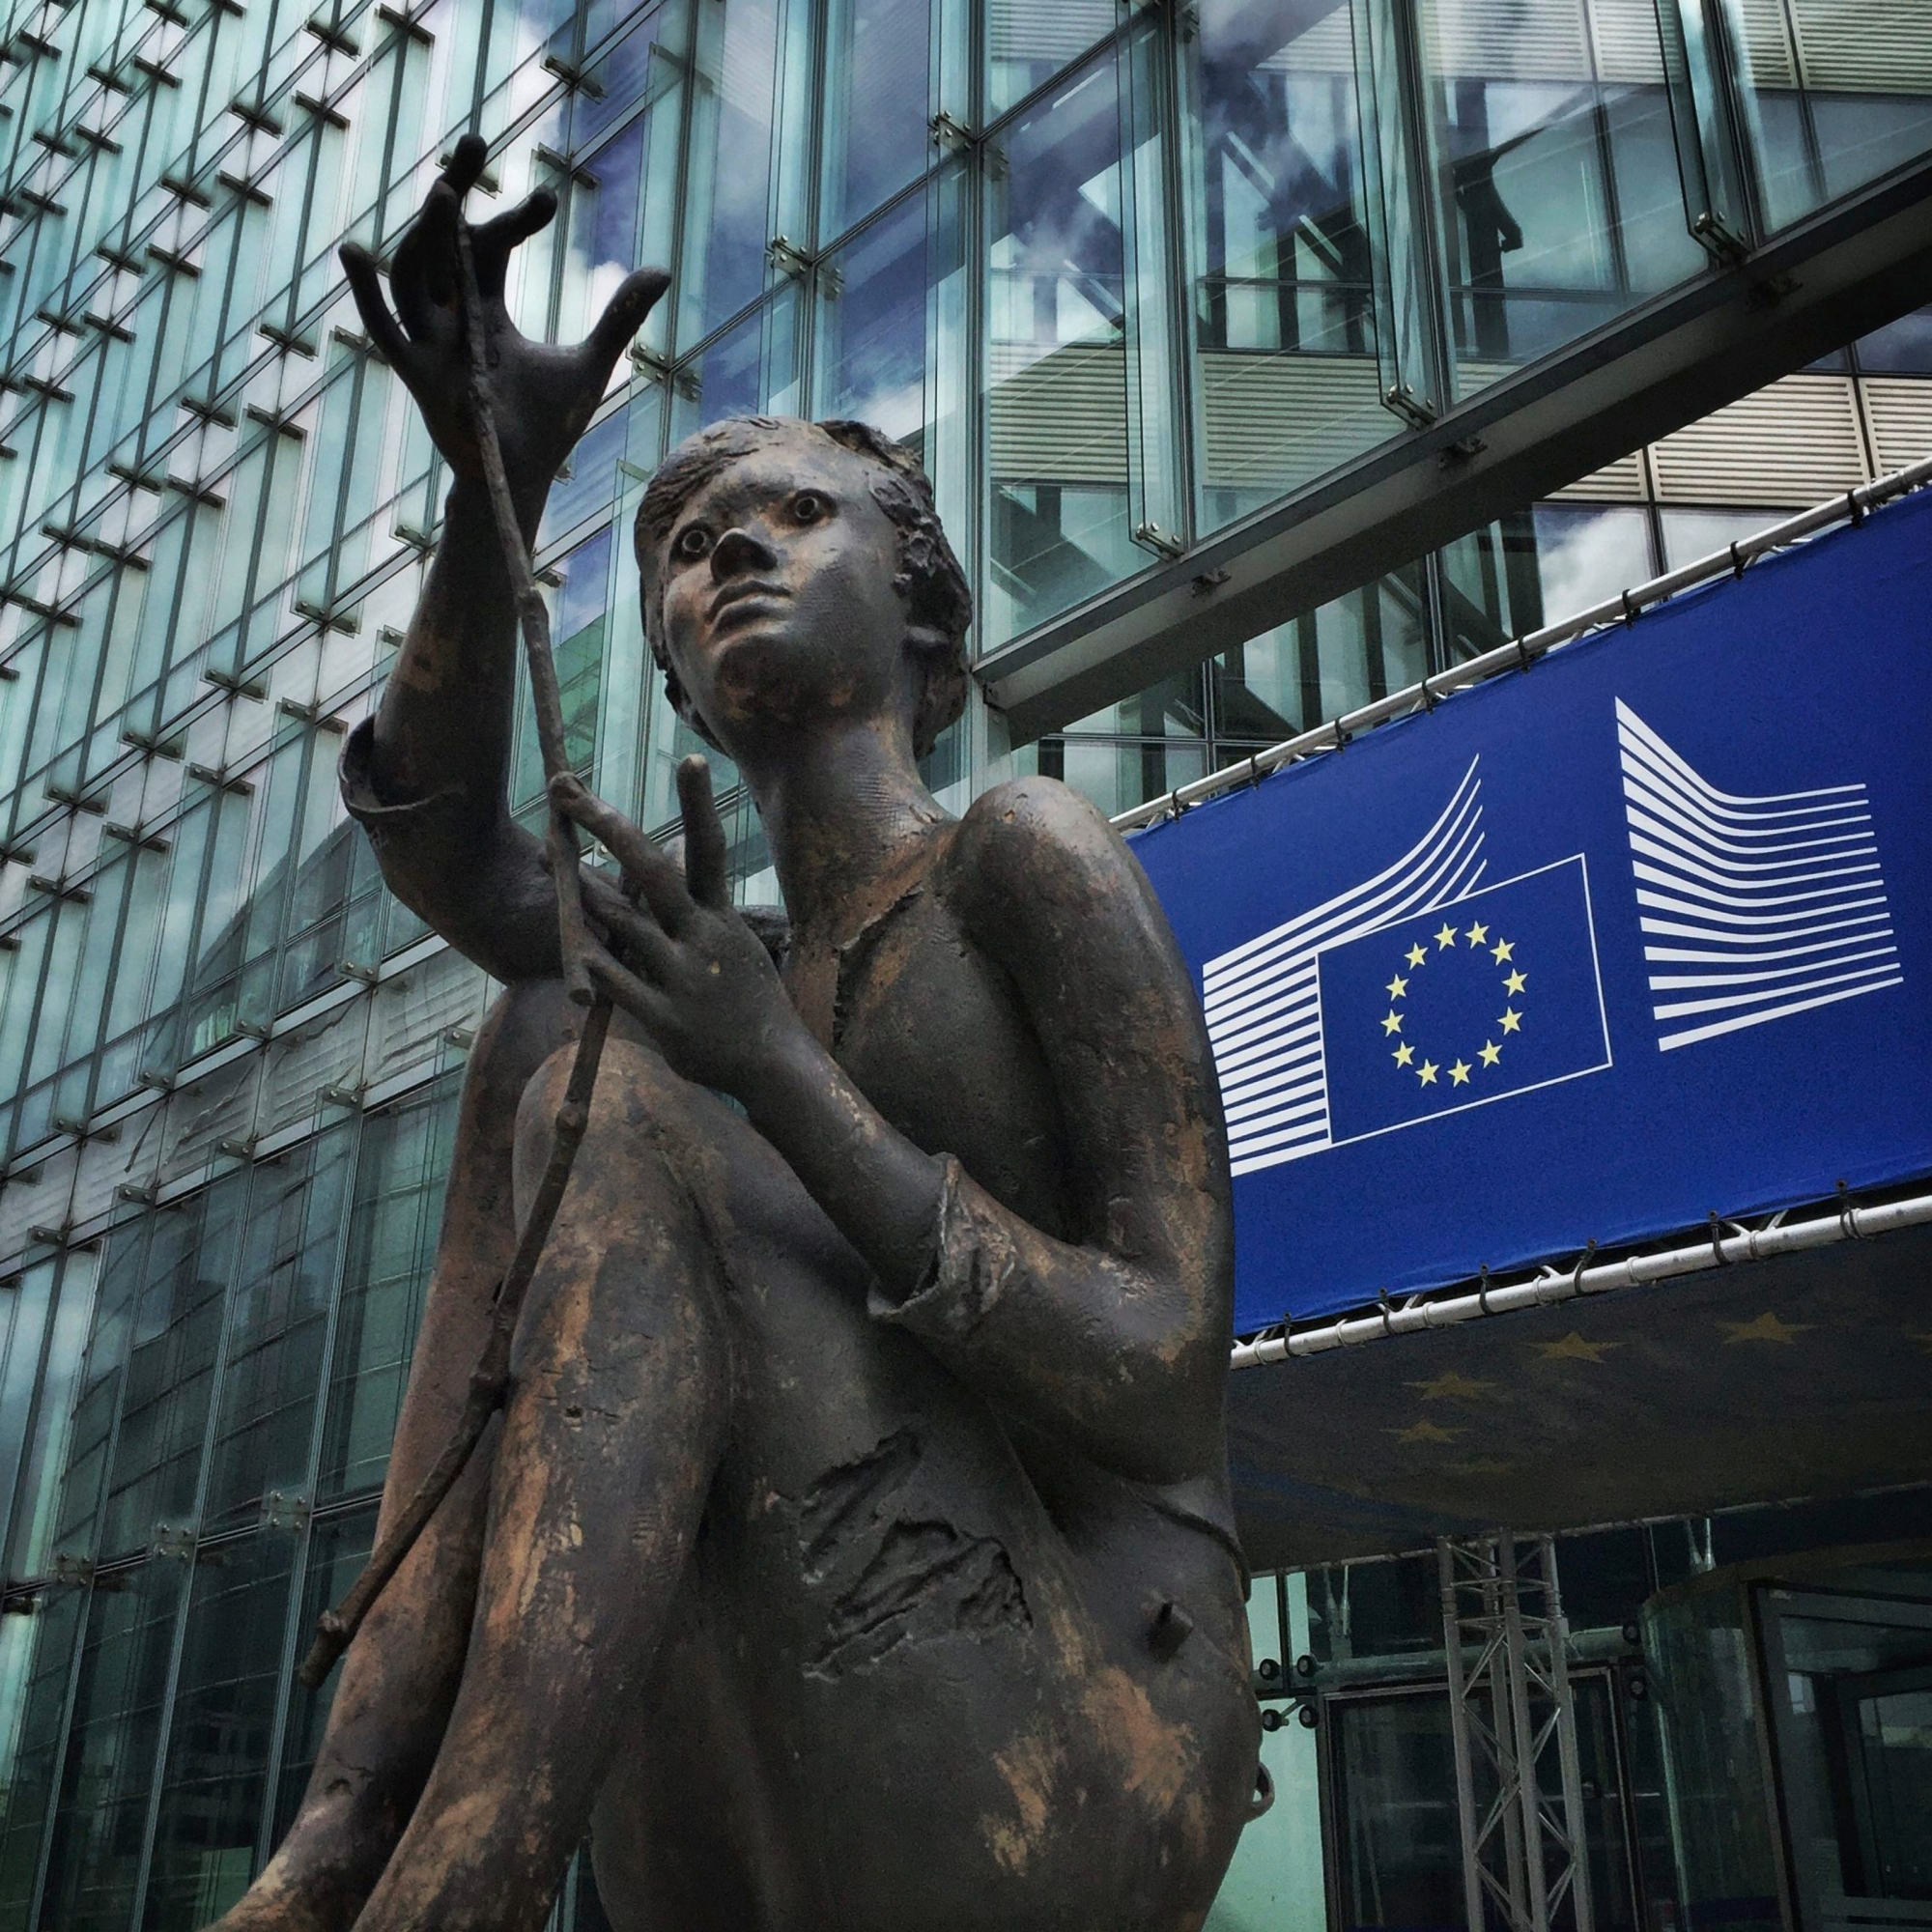 Siège de la commission européenne.

Photo Lib/Alain Wicht, Bruxelles, le 29.03.2016 Siège de la commission européenne